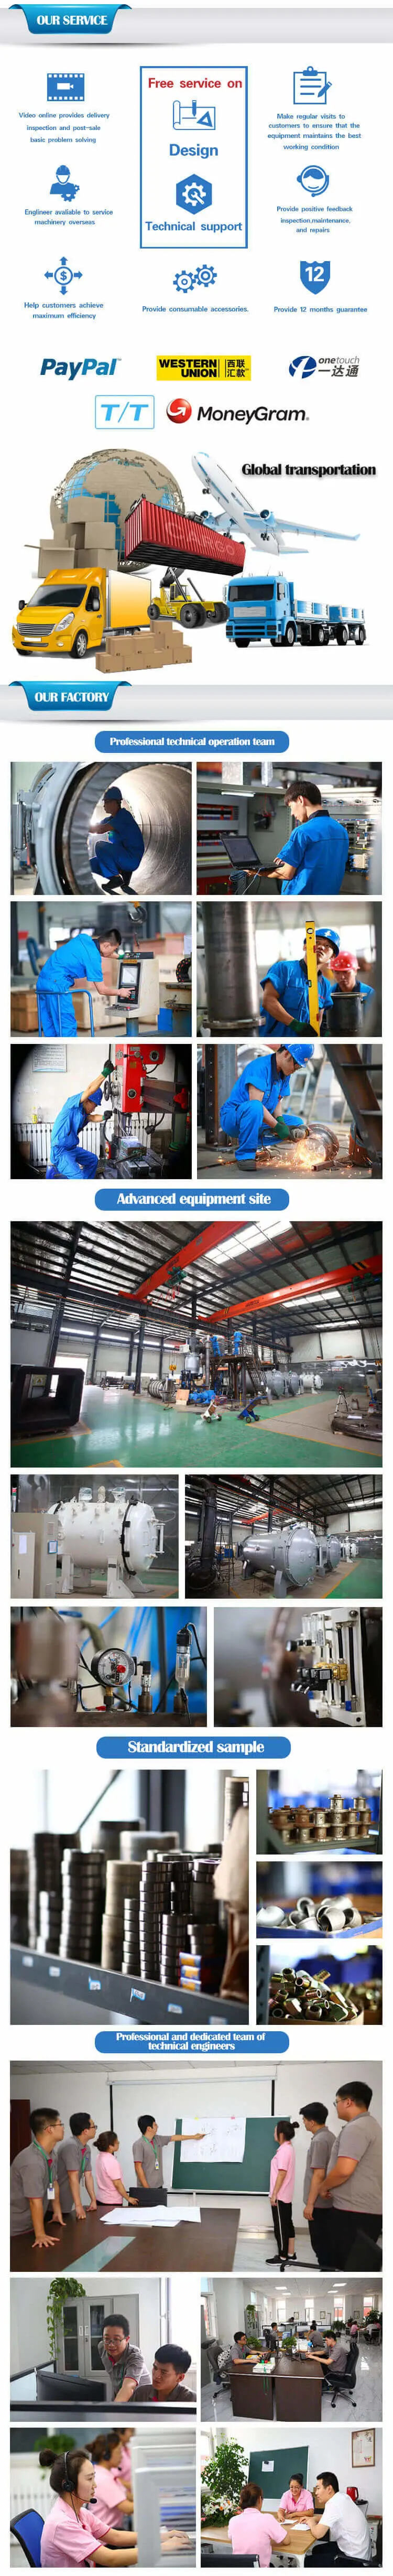 Liaoning Shenyang Densen Customized Powder Metallurgy Sintering Furnace Vacuum Sintering Degreasing Integrated Furnace Vds223